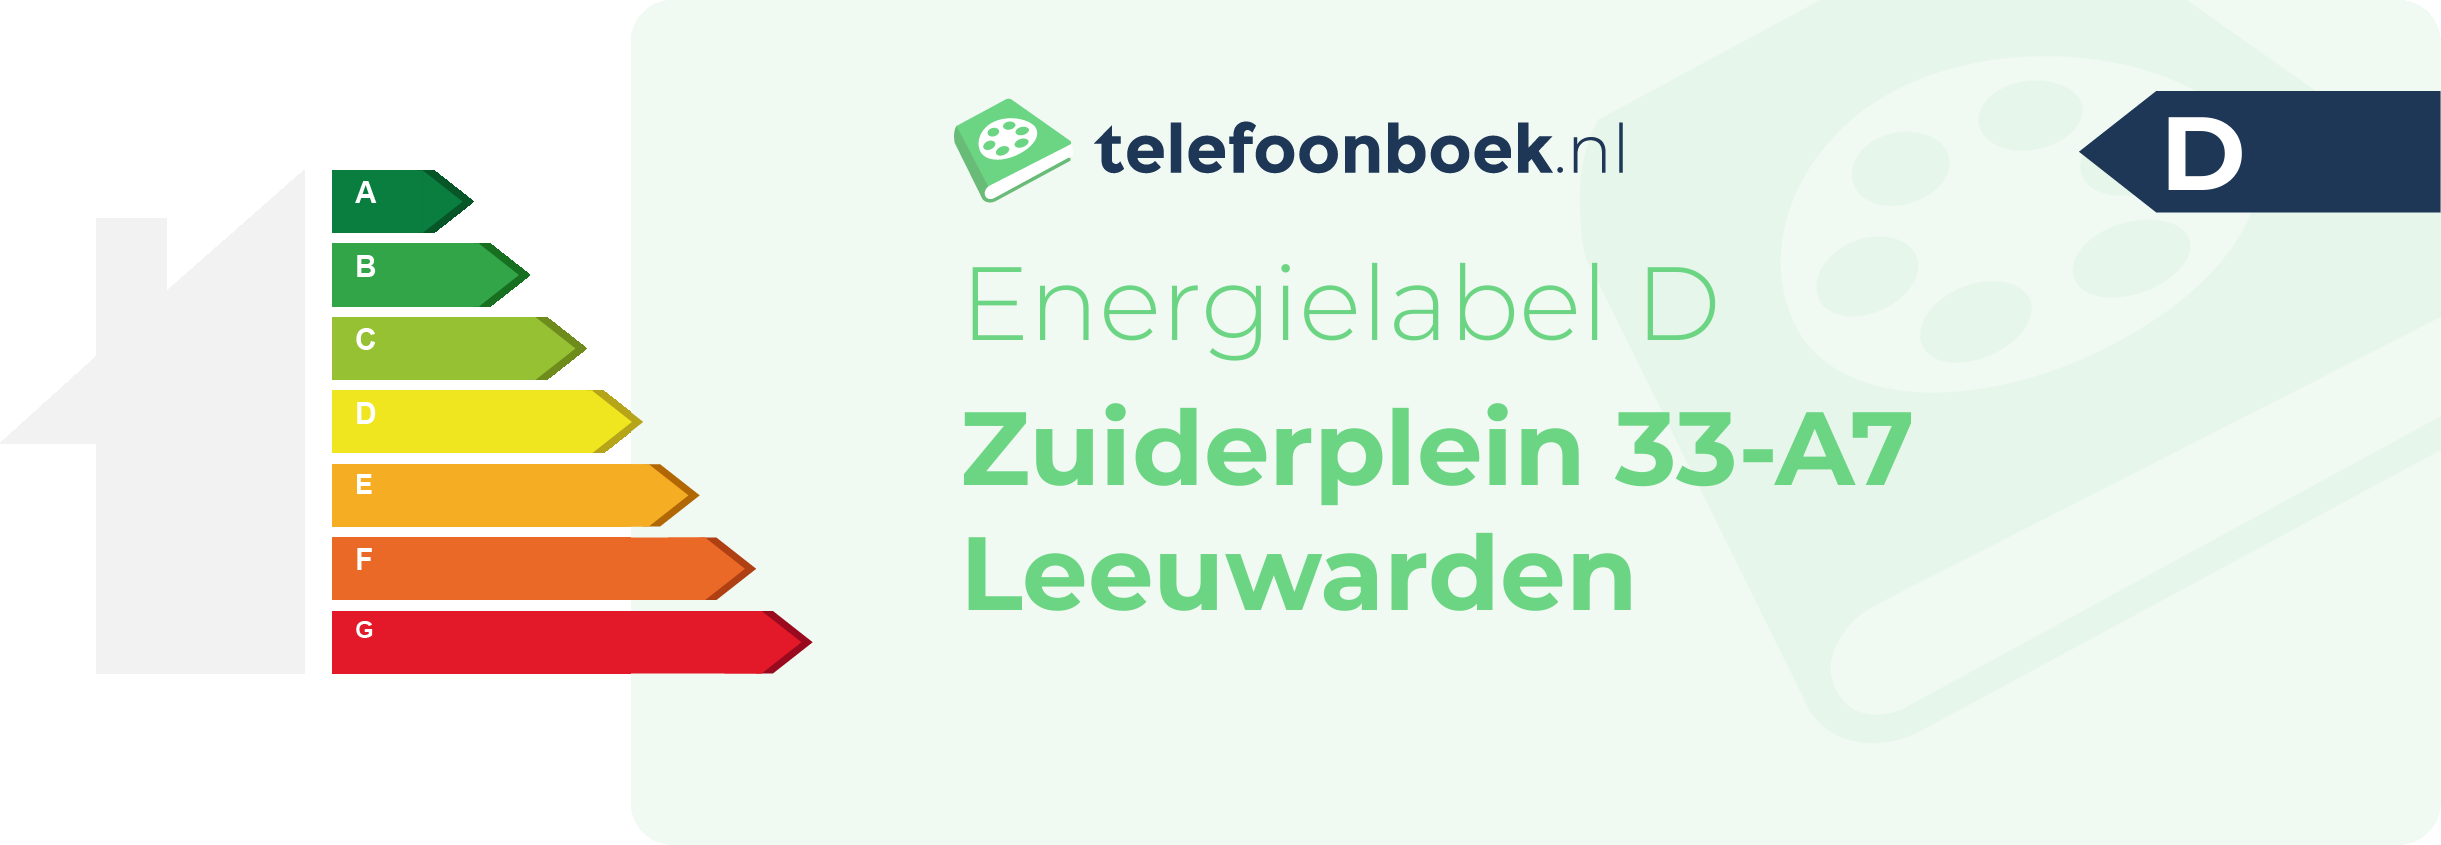 Energielabel Zuiderplein 33-A7 Leeuwarden